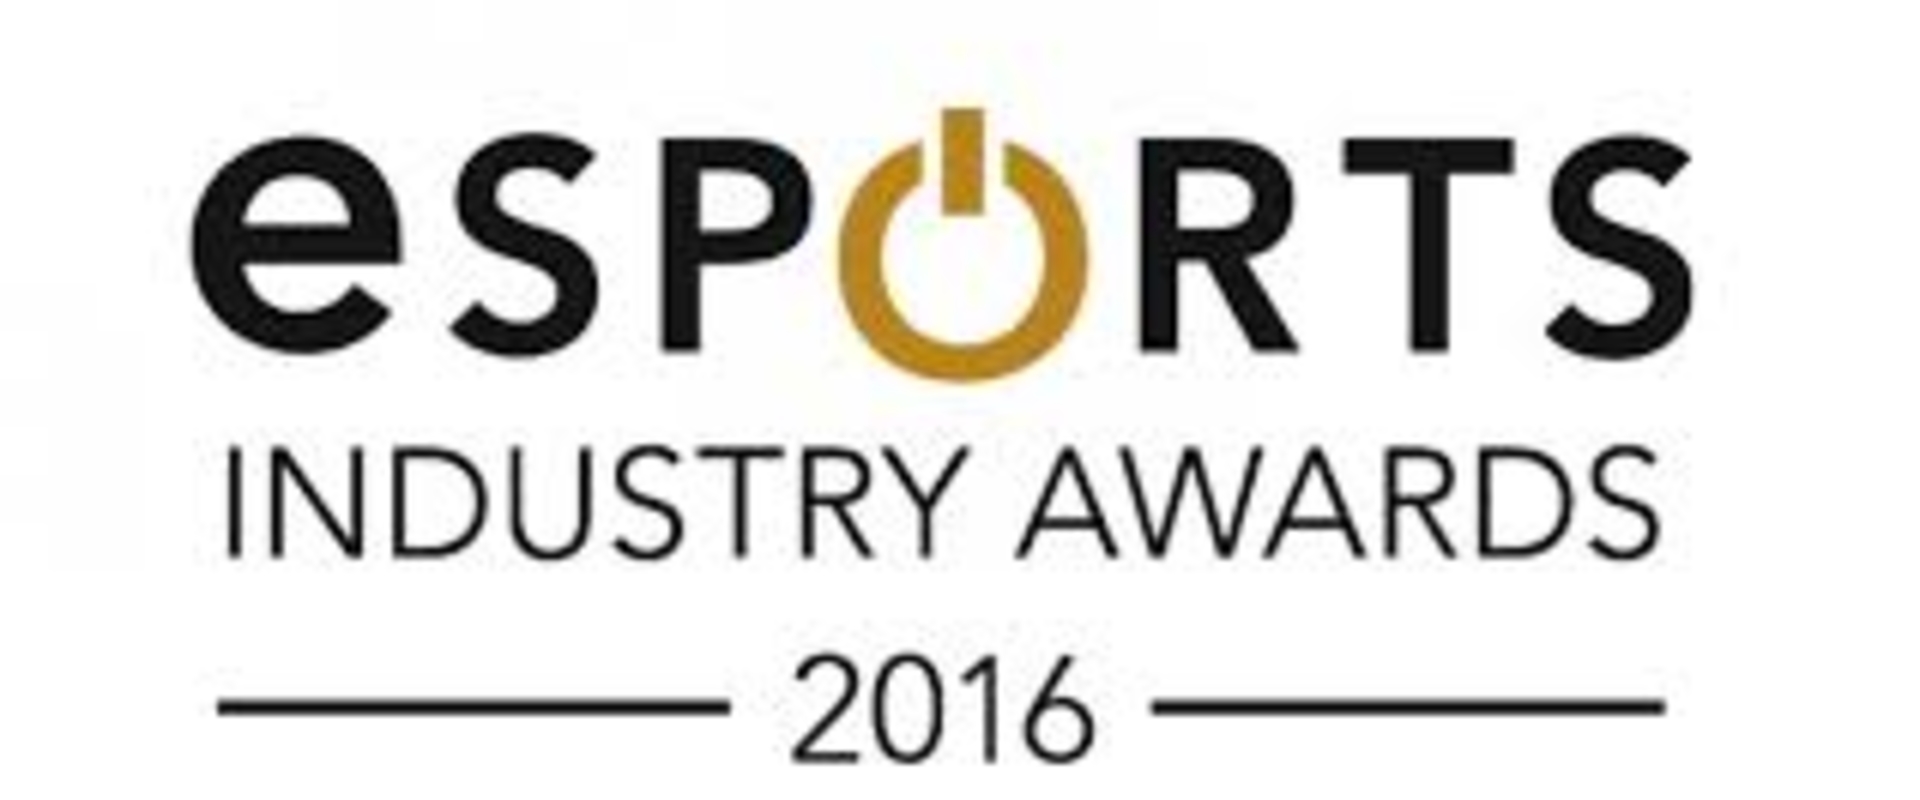 Esports Industry Awards 2016: Íme a jelöltek!